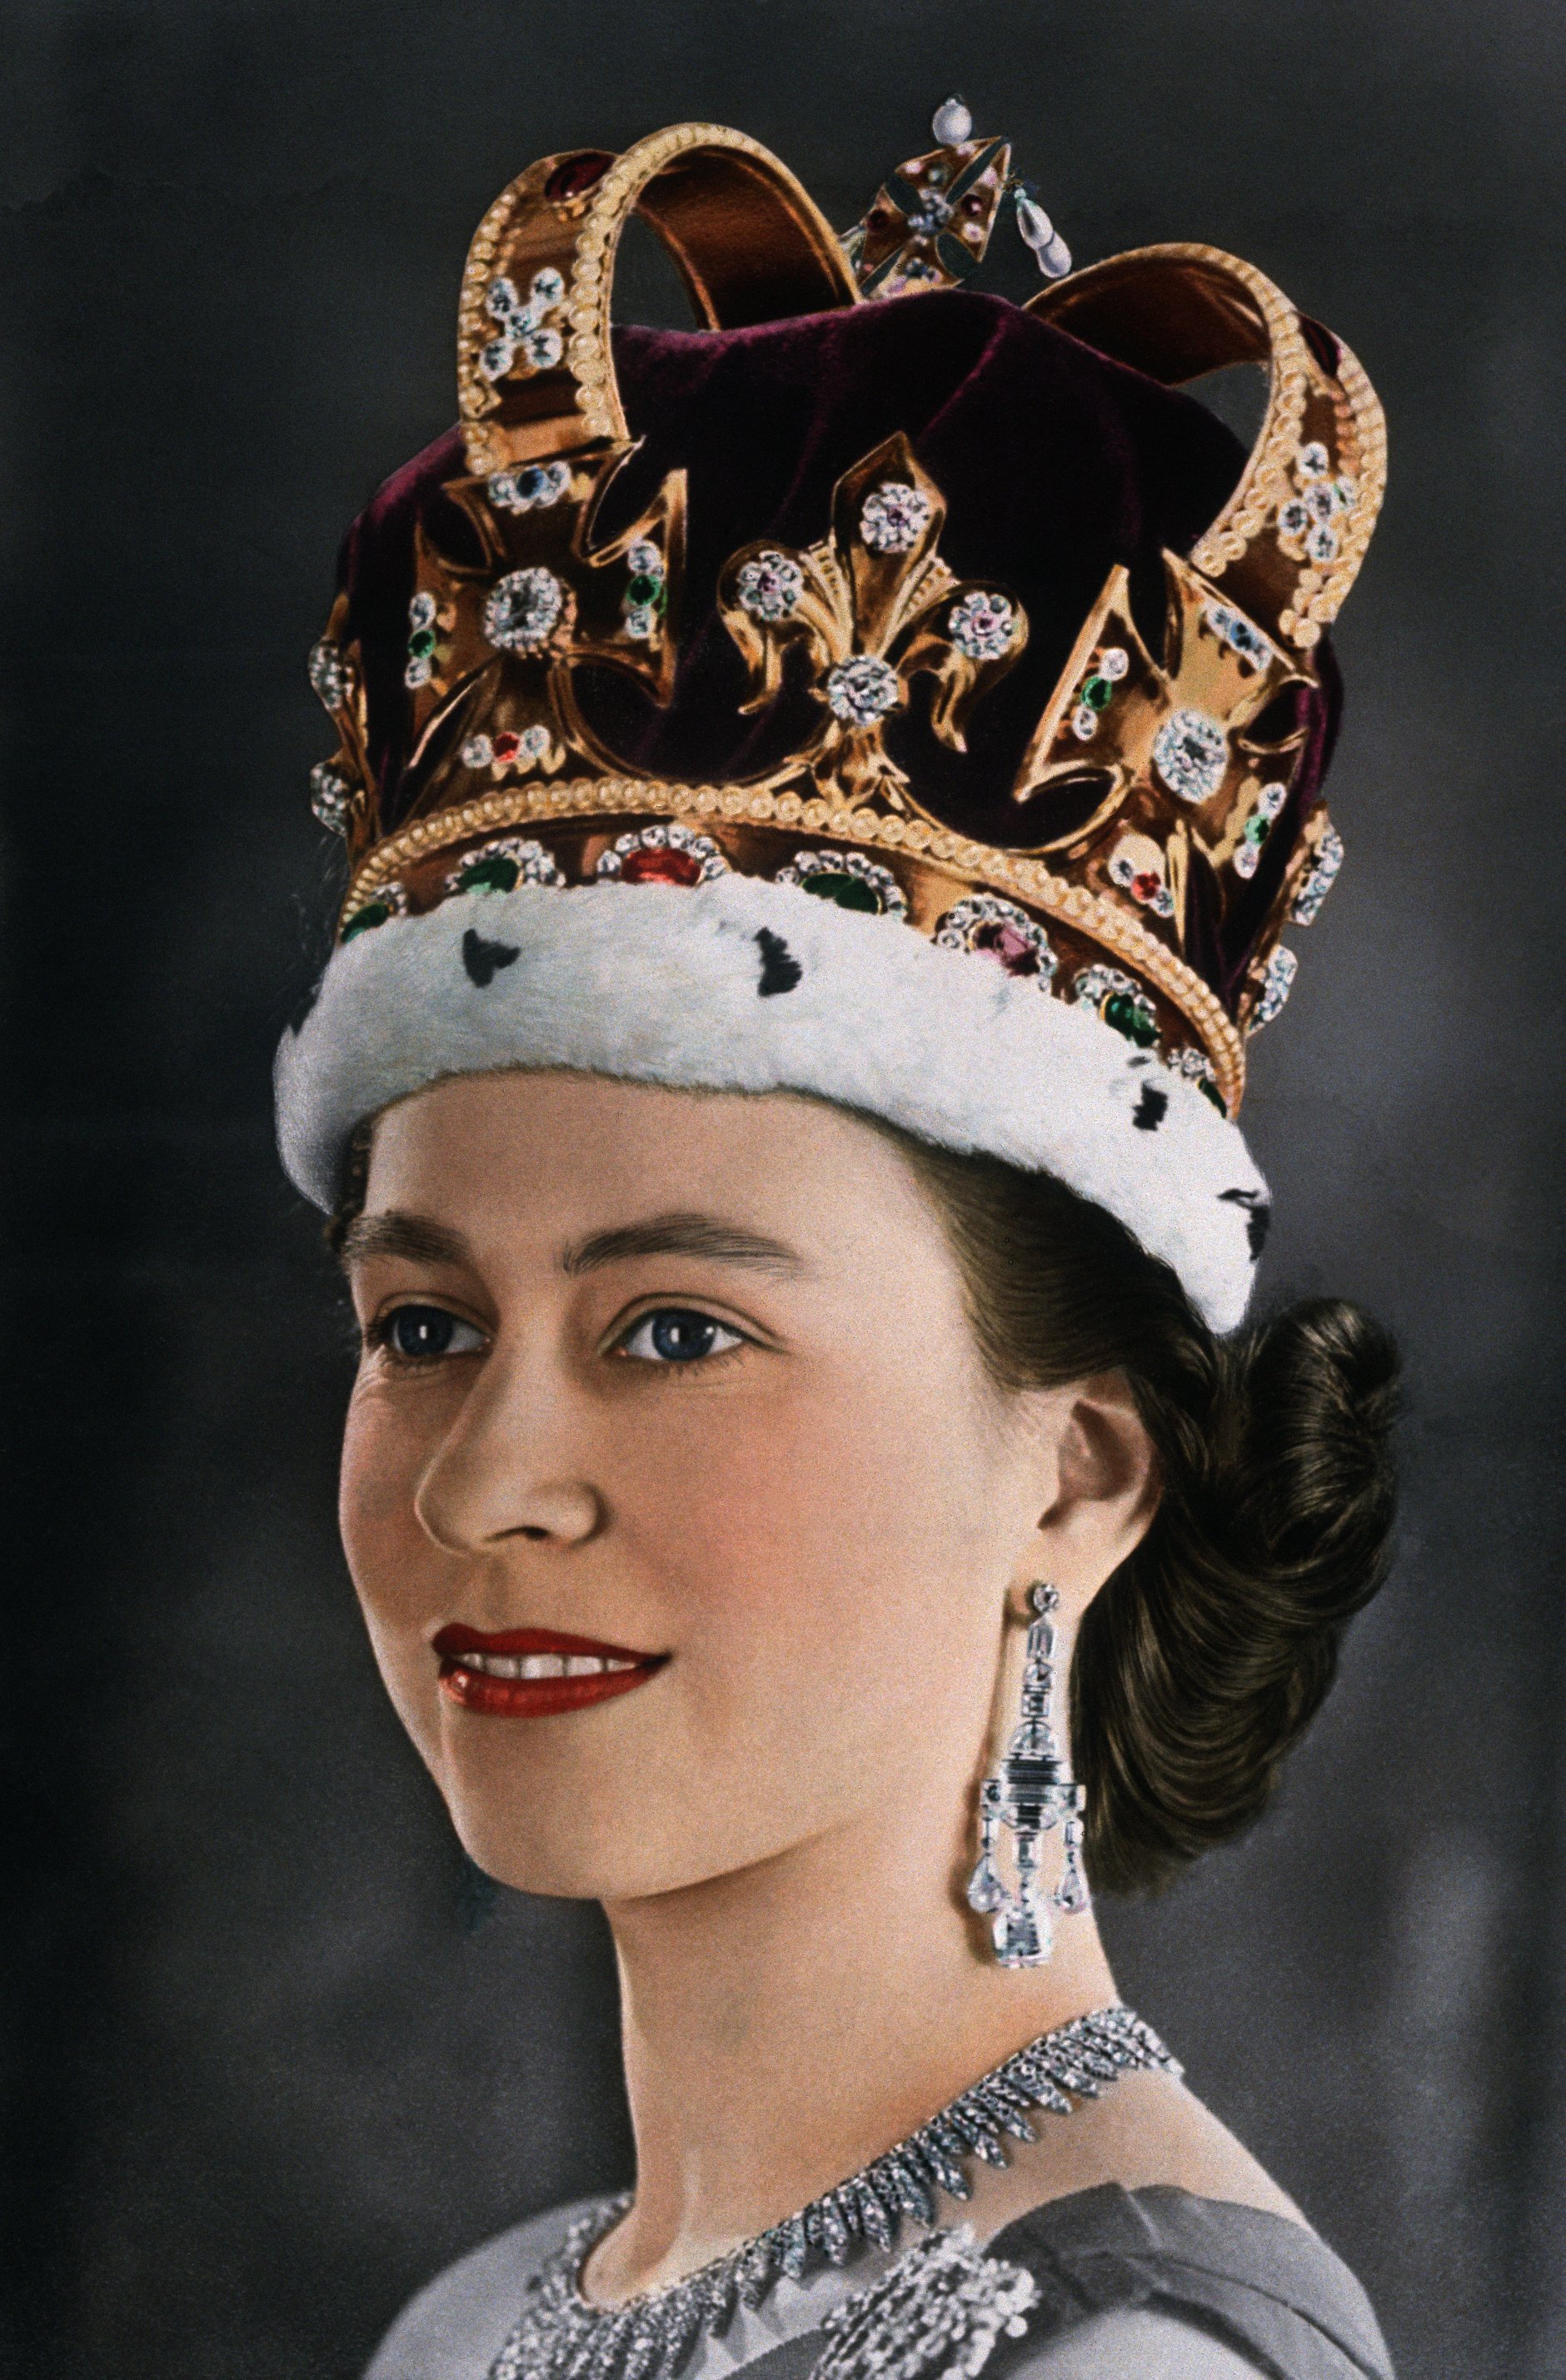 Ein Porträt der jungen Elizabeth II (1926- ) von Großbritannien und Nordirland, die bei ihrer Krönung im Juni 1953 die Krone der Könige und Königinnen von England trägt | Quelle: Getty Images